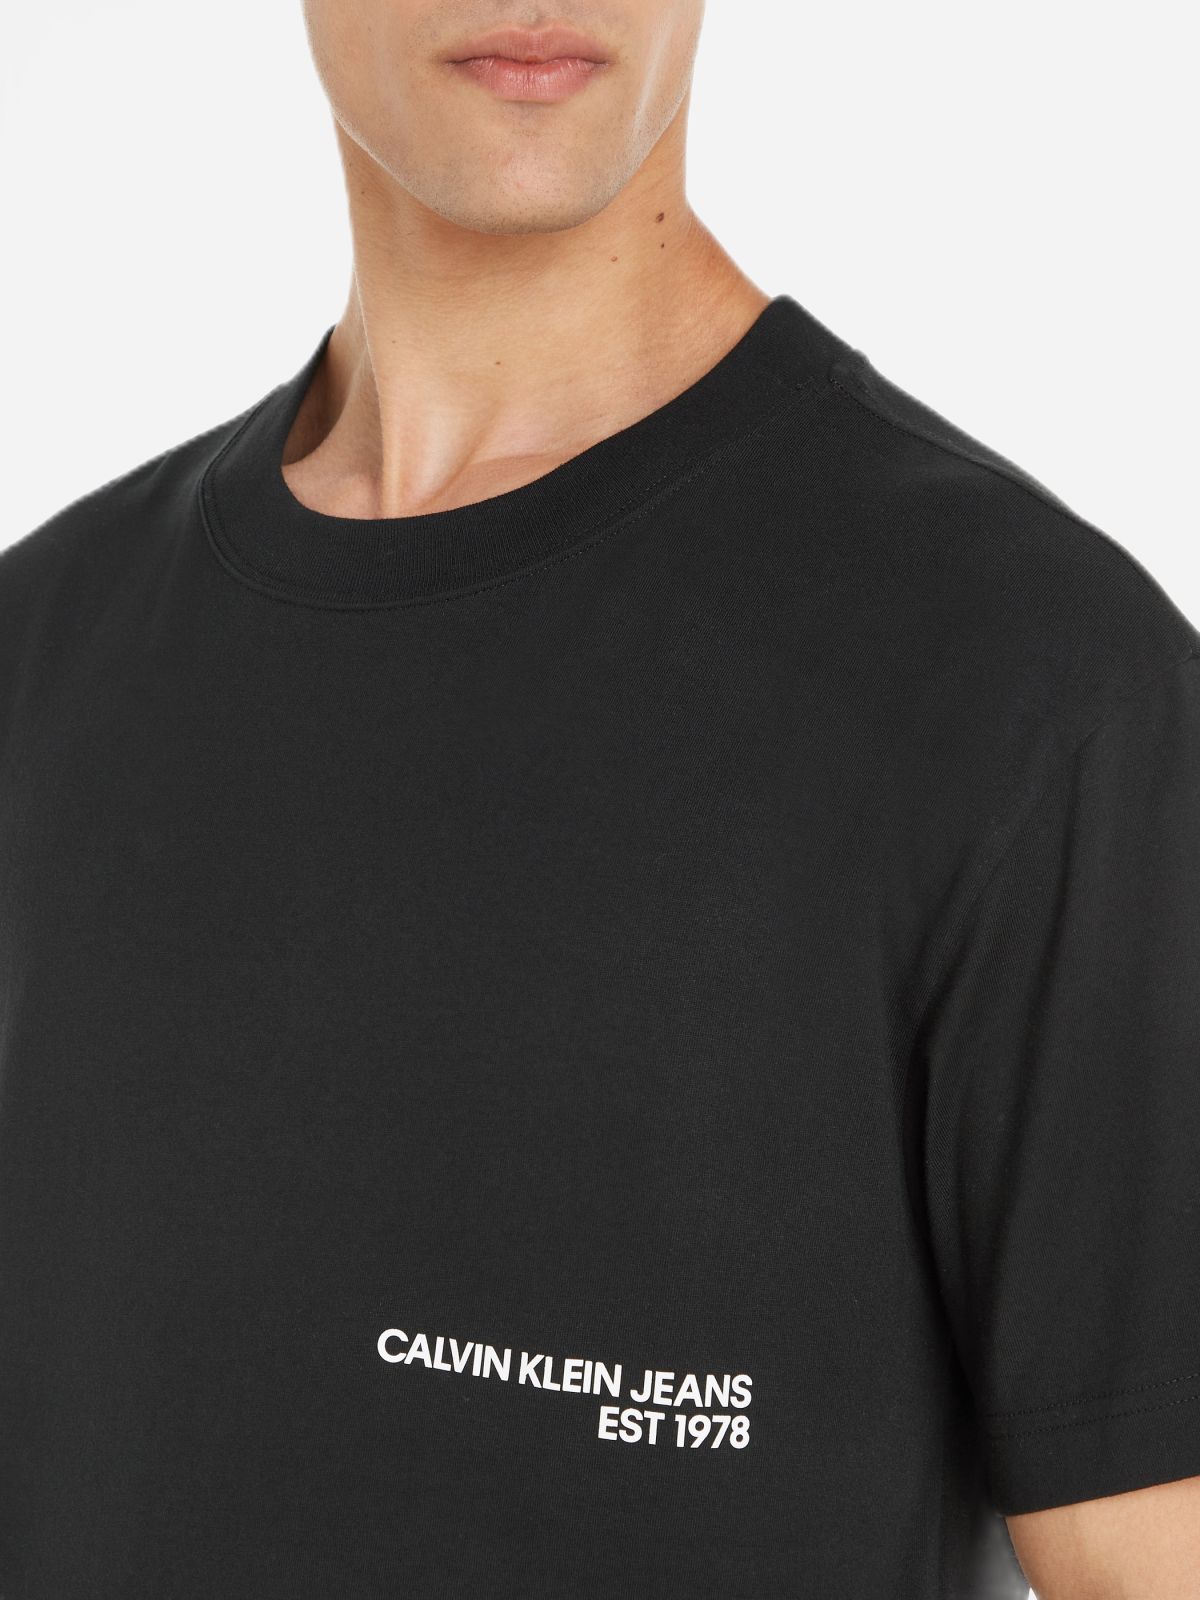  טי שירט כיתוב לוגו של CALVIN KLEIN